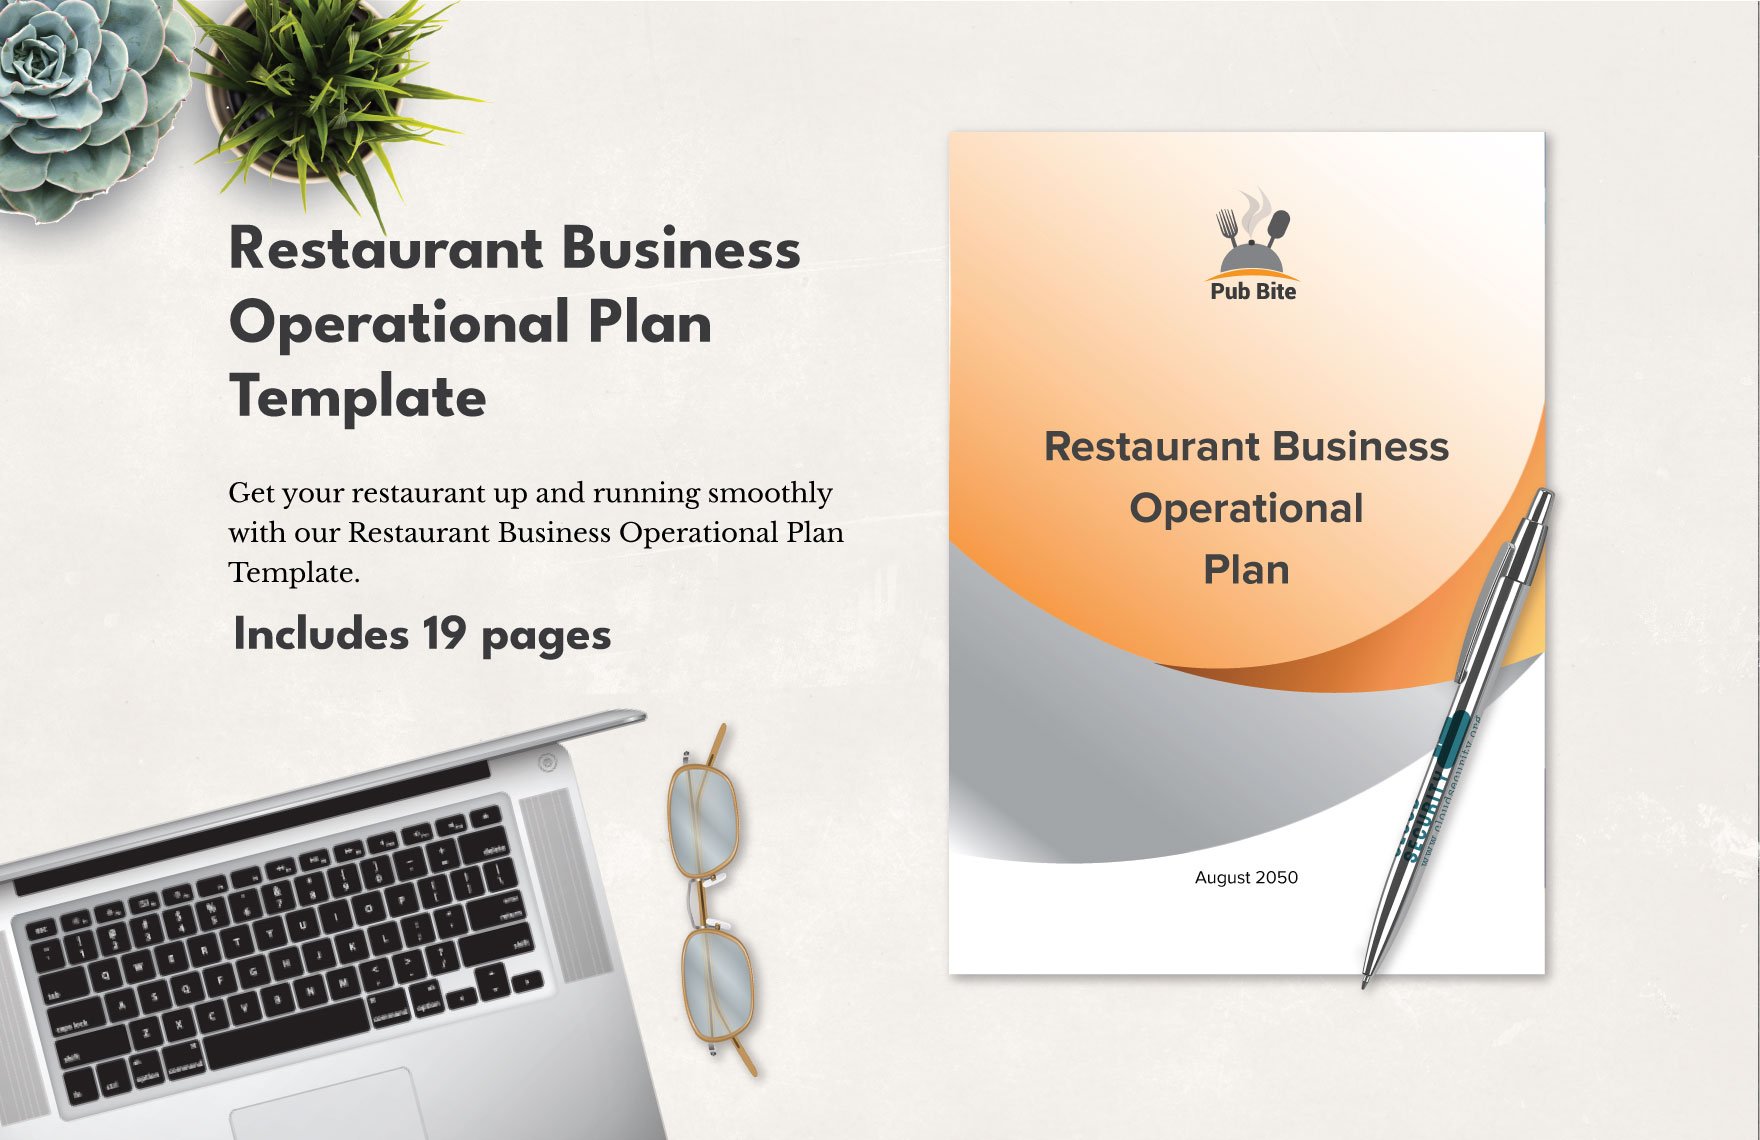 Restaurant Business Operational Plan Template